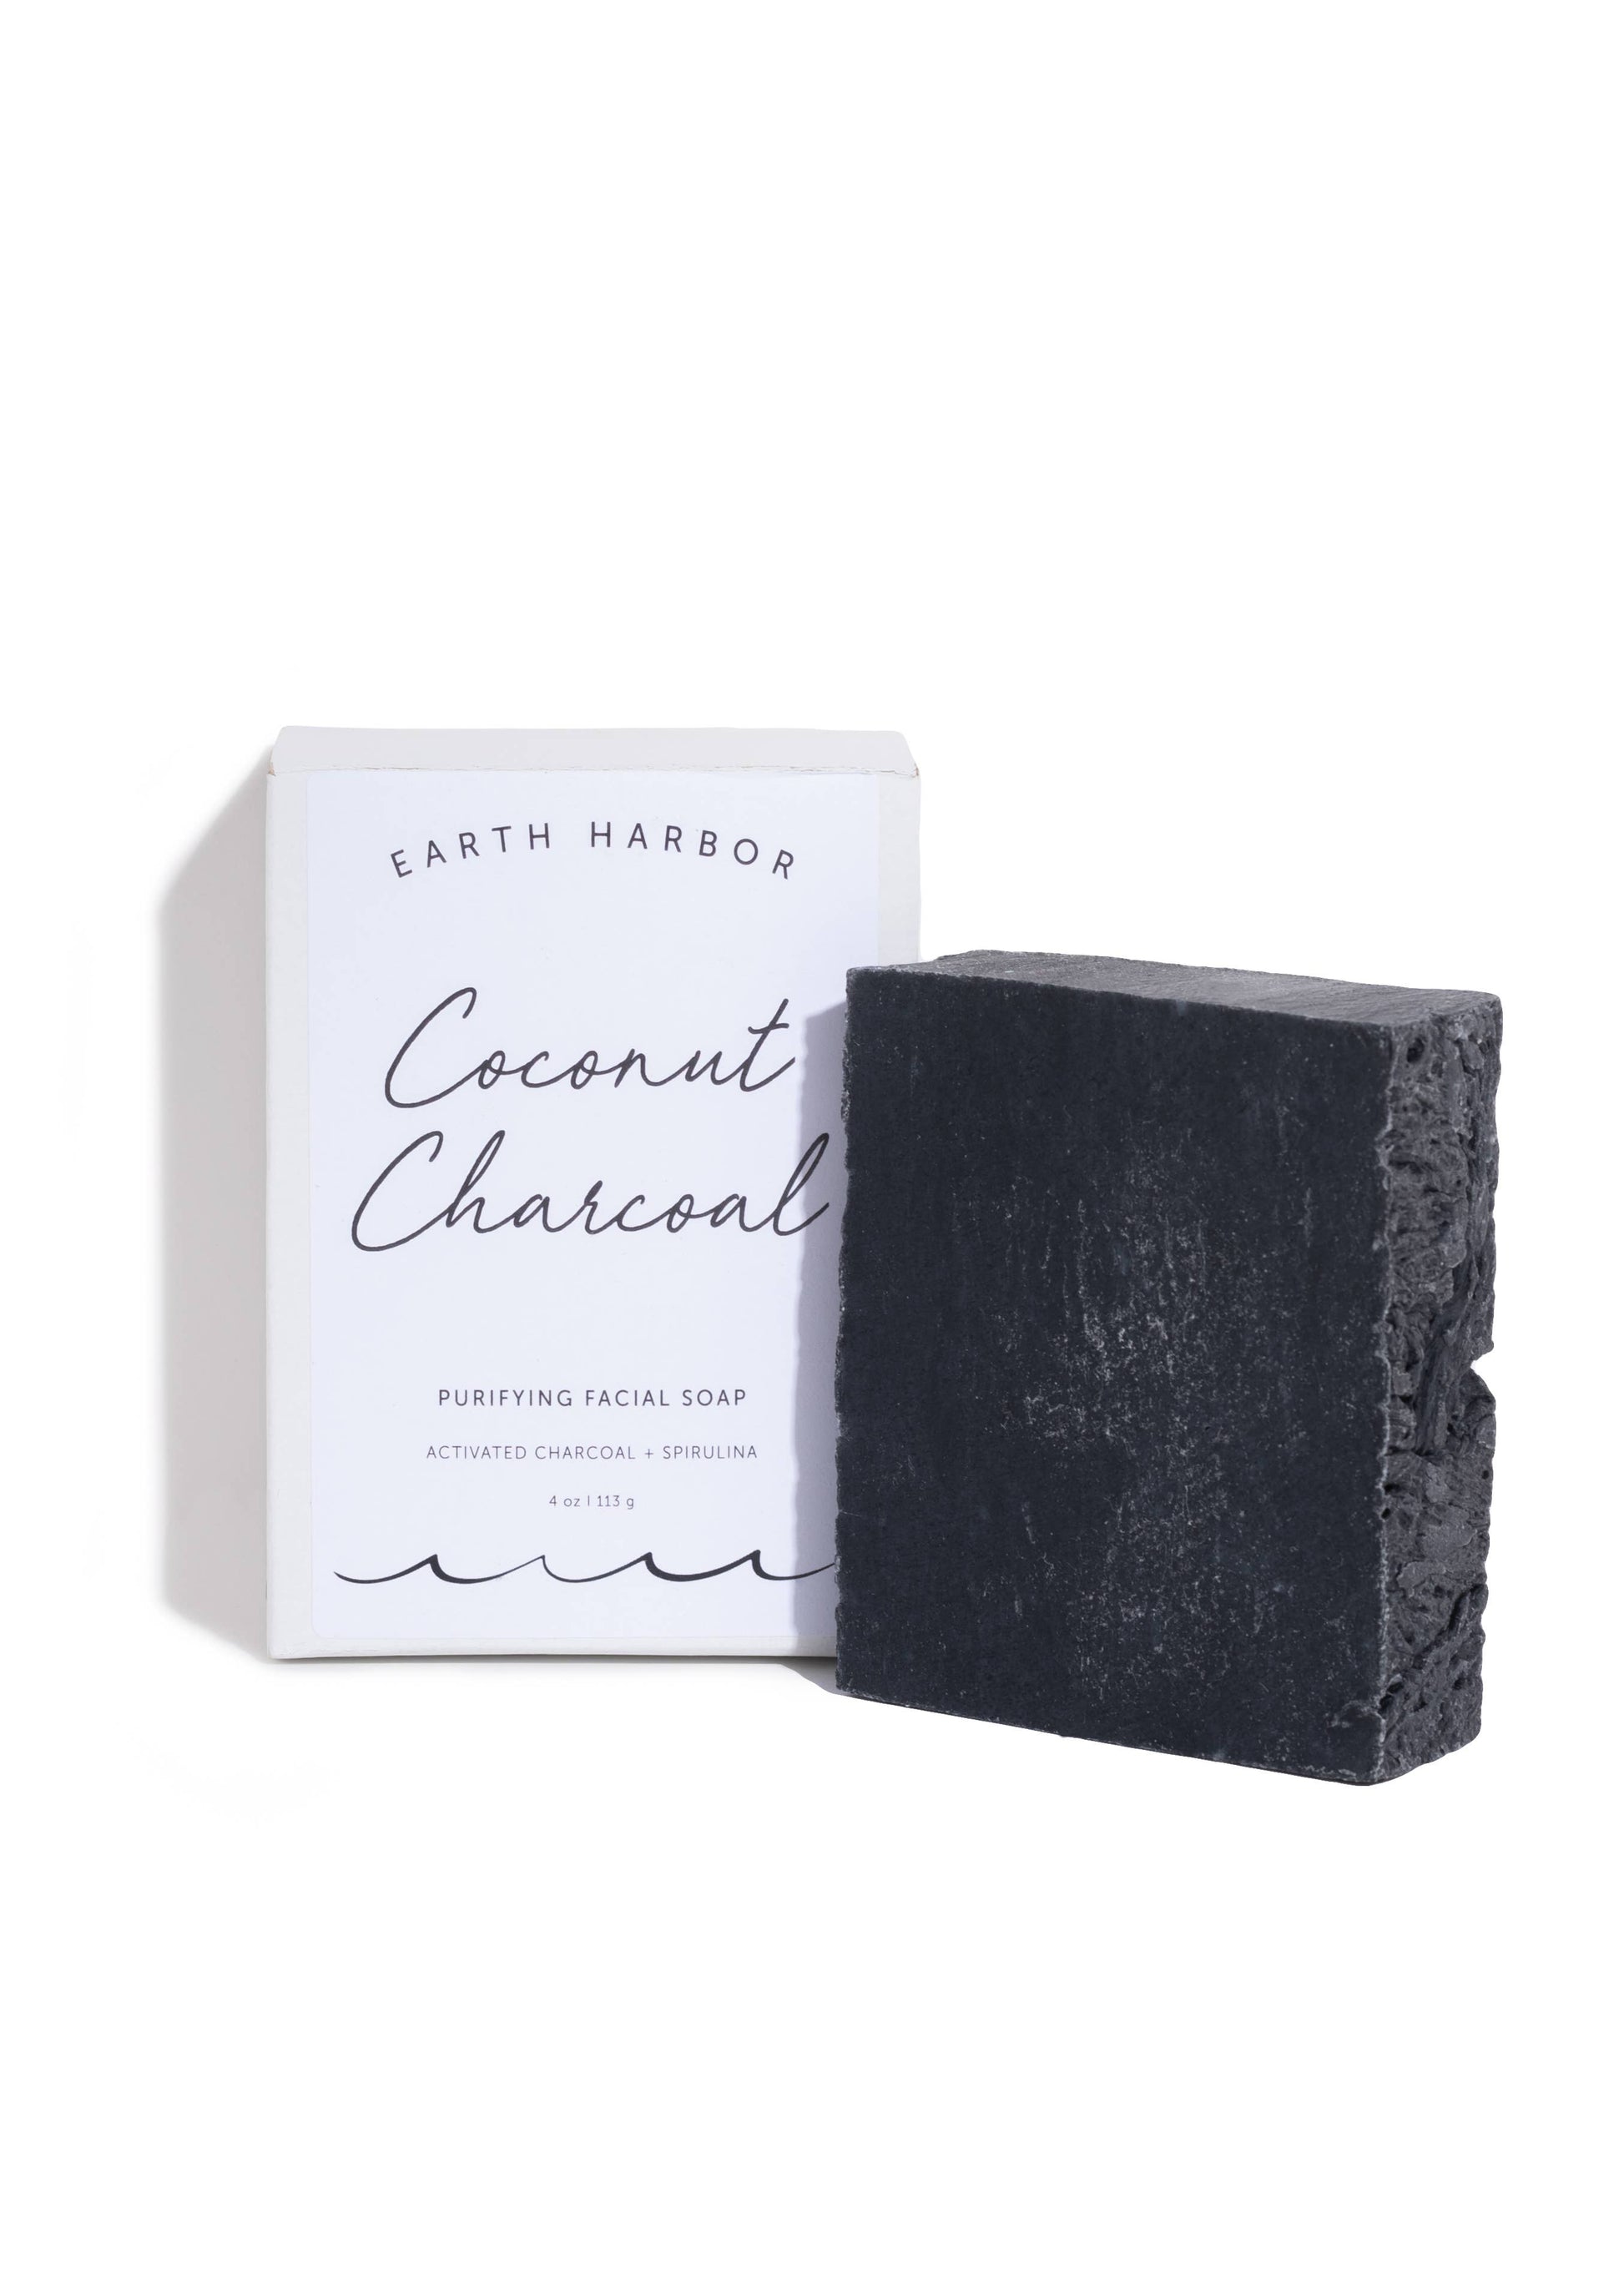 Facial Soap: Coconut Charcoal + Spirulina Core Earth Harbor Naturals